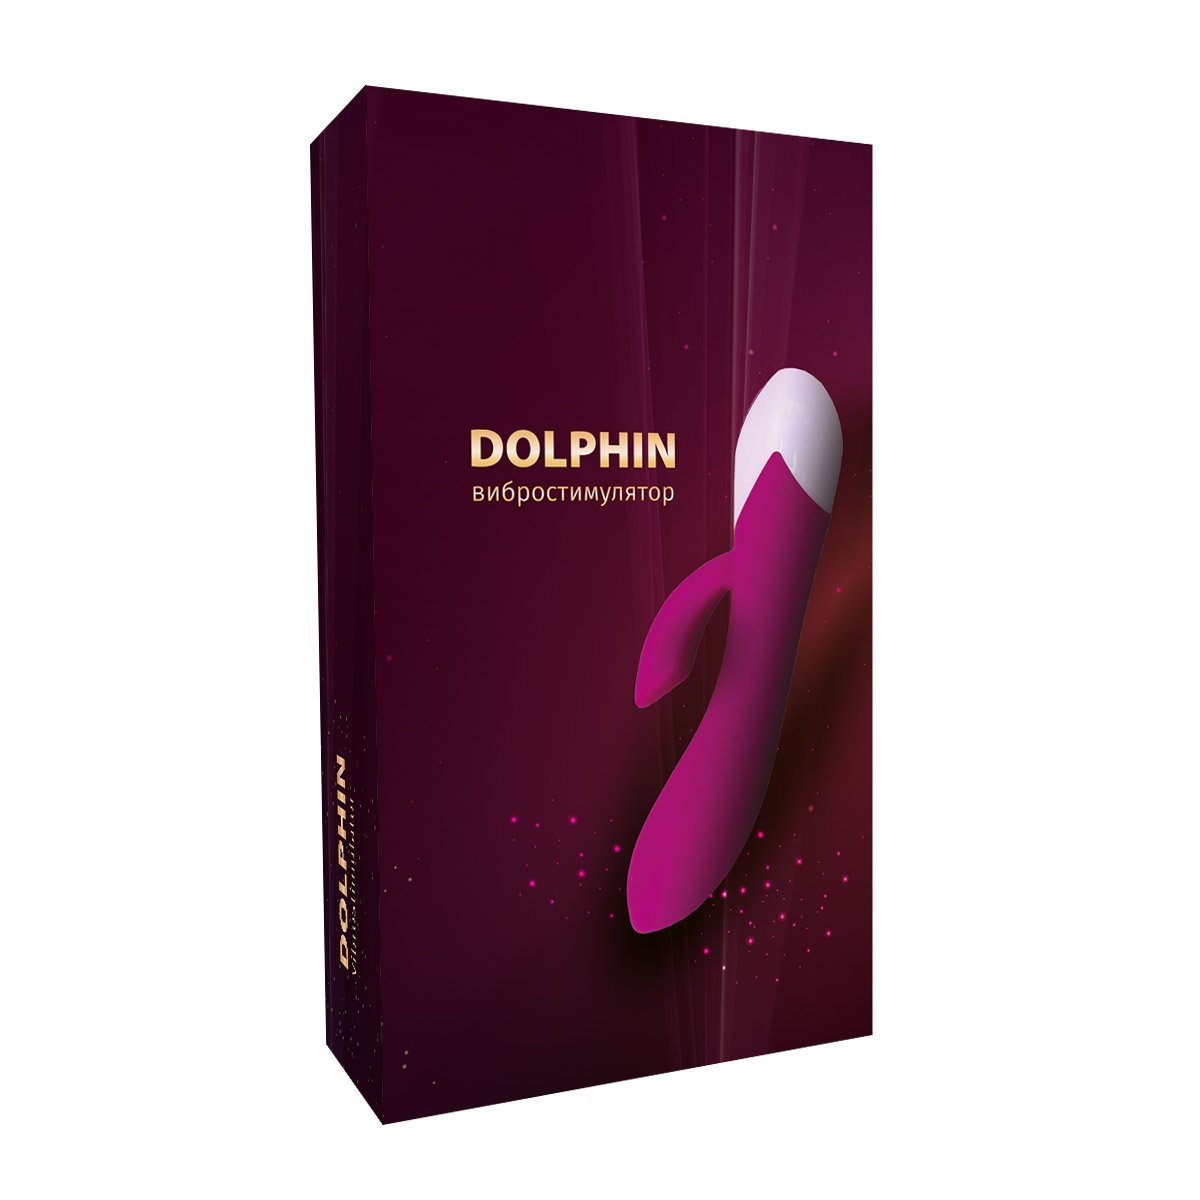 Dolphin вибратор (вибростимулятор)